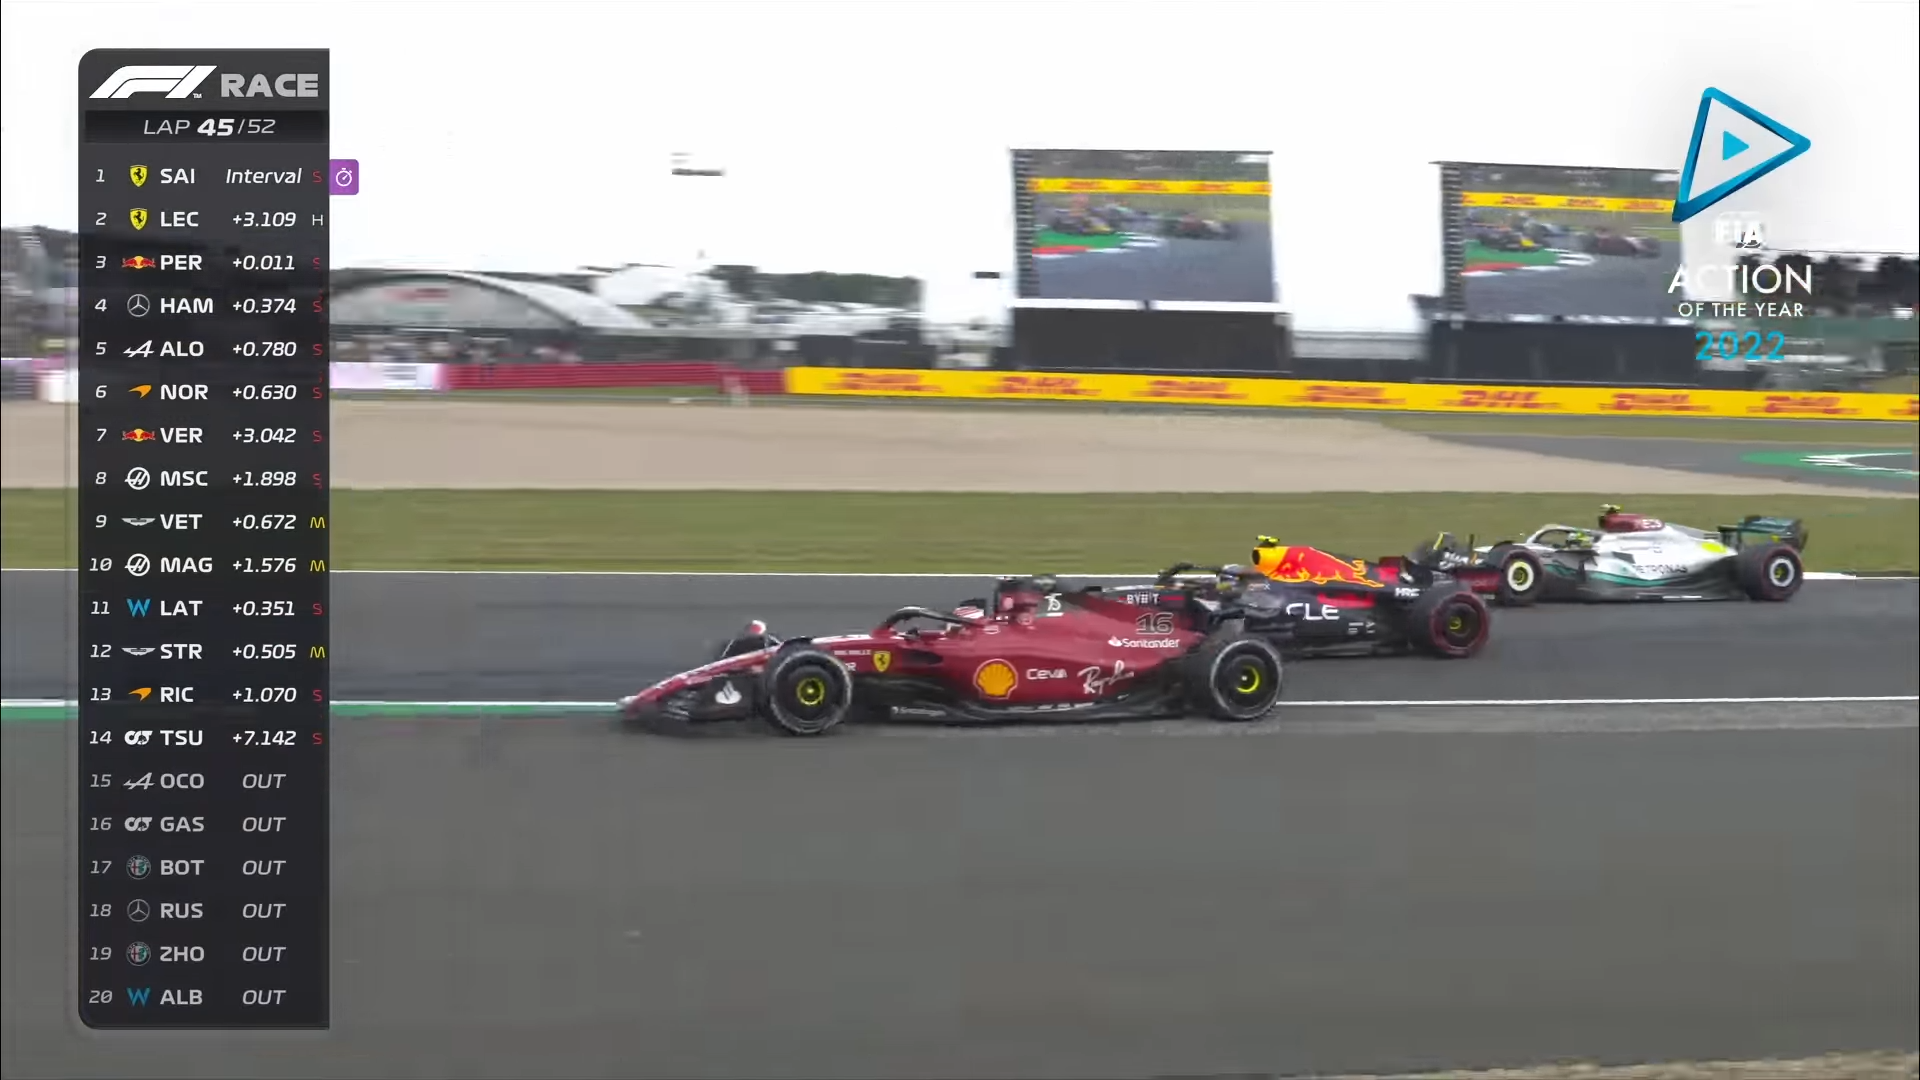 Esta acción entre Leclerc, Verstappen y Hamilton es la mejor del año en la F1.